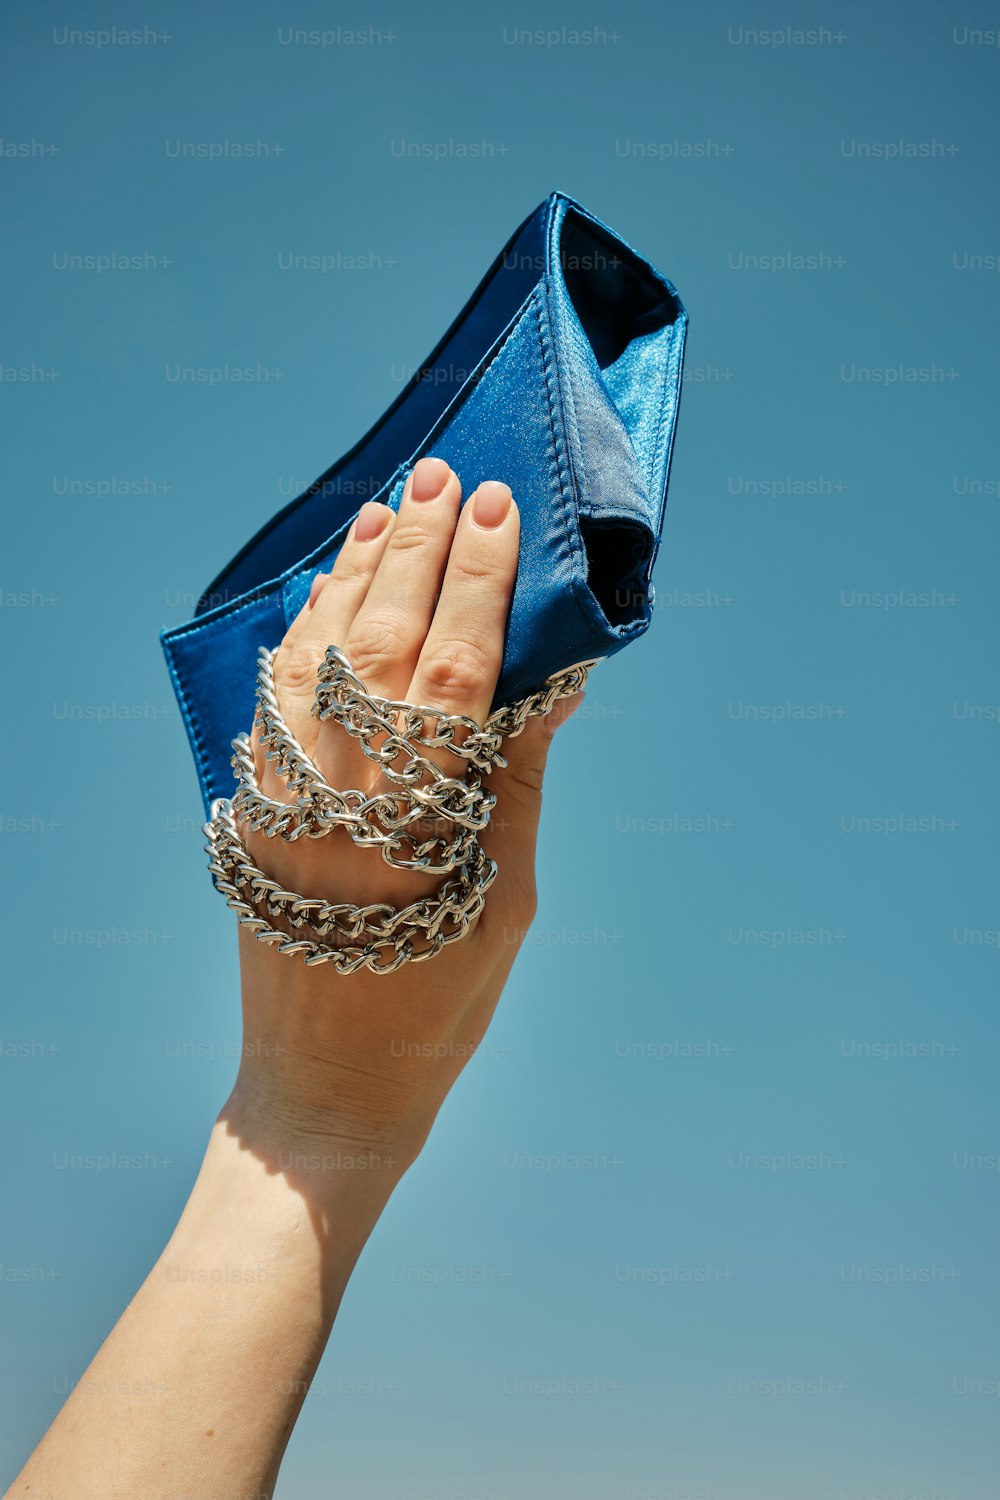 파란 지갑을 들고 있는 여자의 손